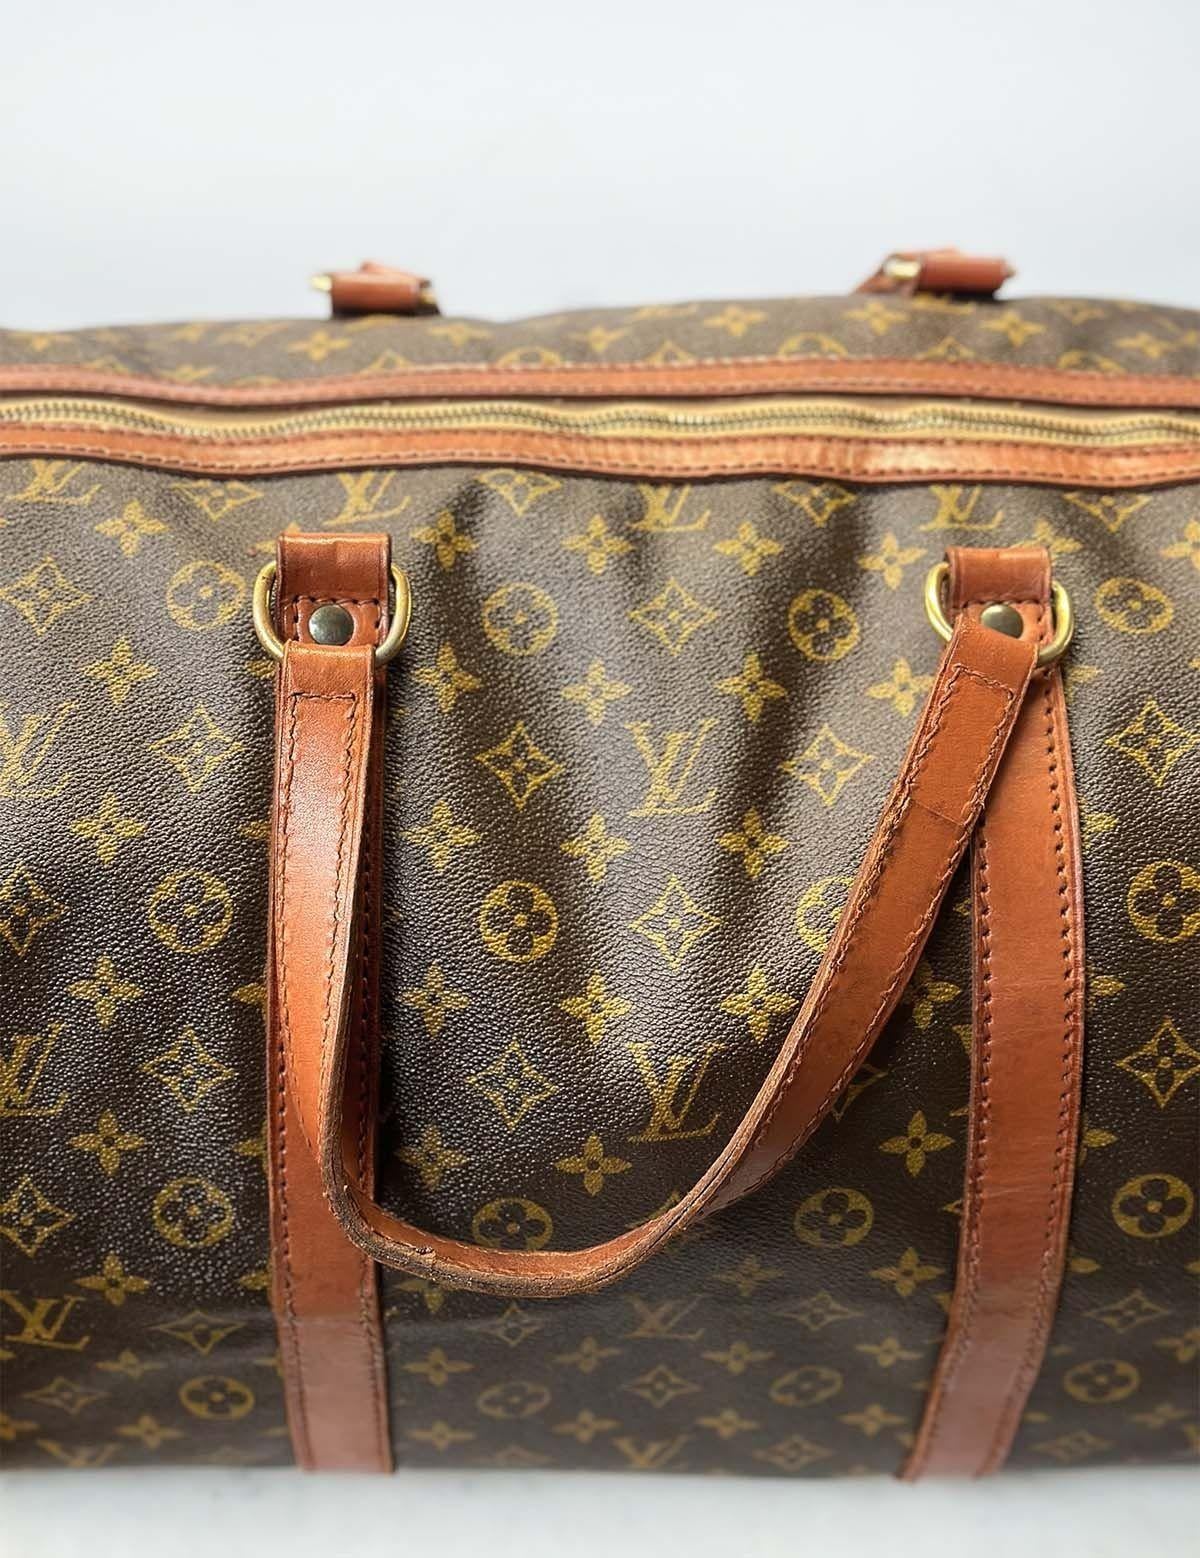 Vintage Louis Vuitton Monogram Gepäck Tasche. Das Äußere der Tasche ist mit dem berühmten LV-Monogramm und Details aus Vachetta-Leder verziert und mit goldfarbenen Messingbeschlägen versehen.
Abmessungen:
19 